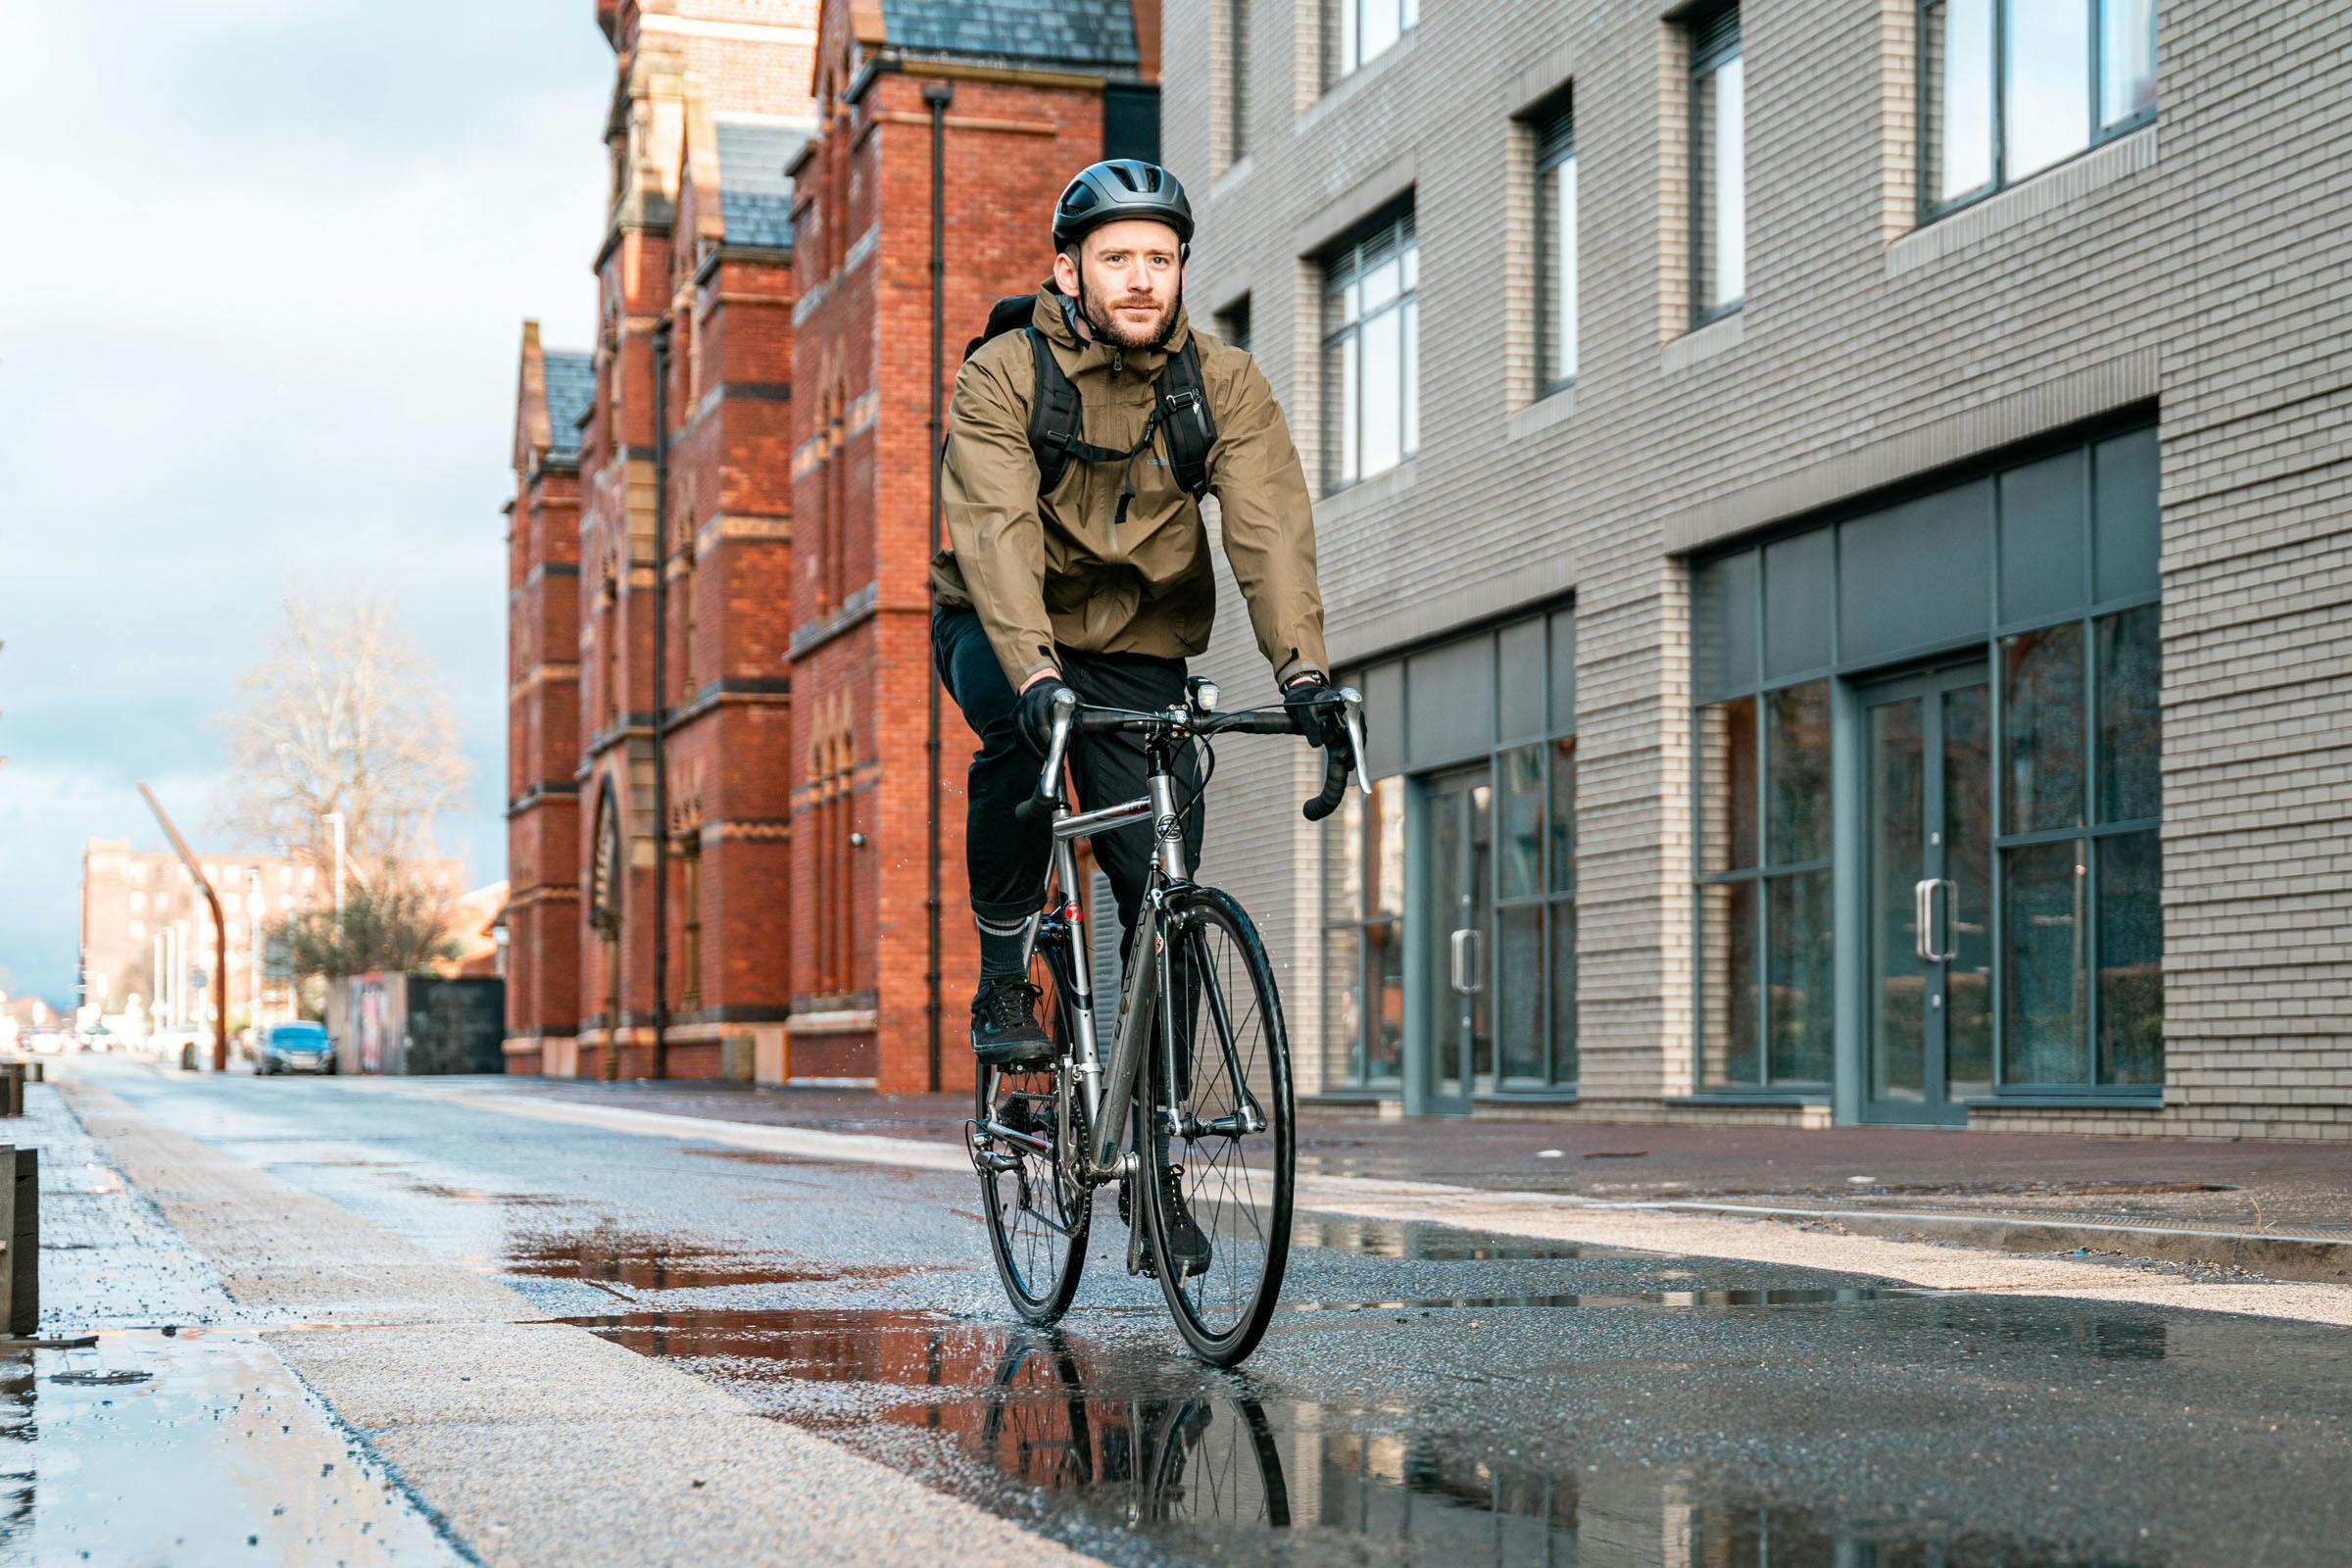 Man cycling through city